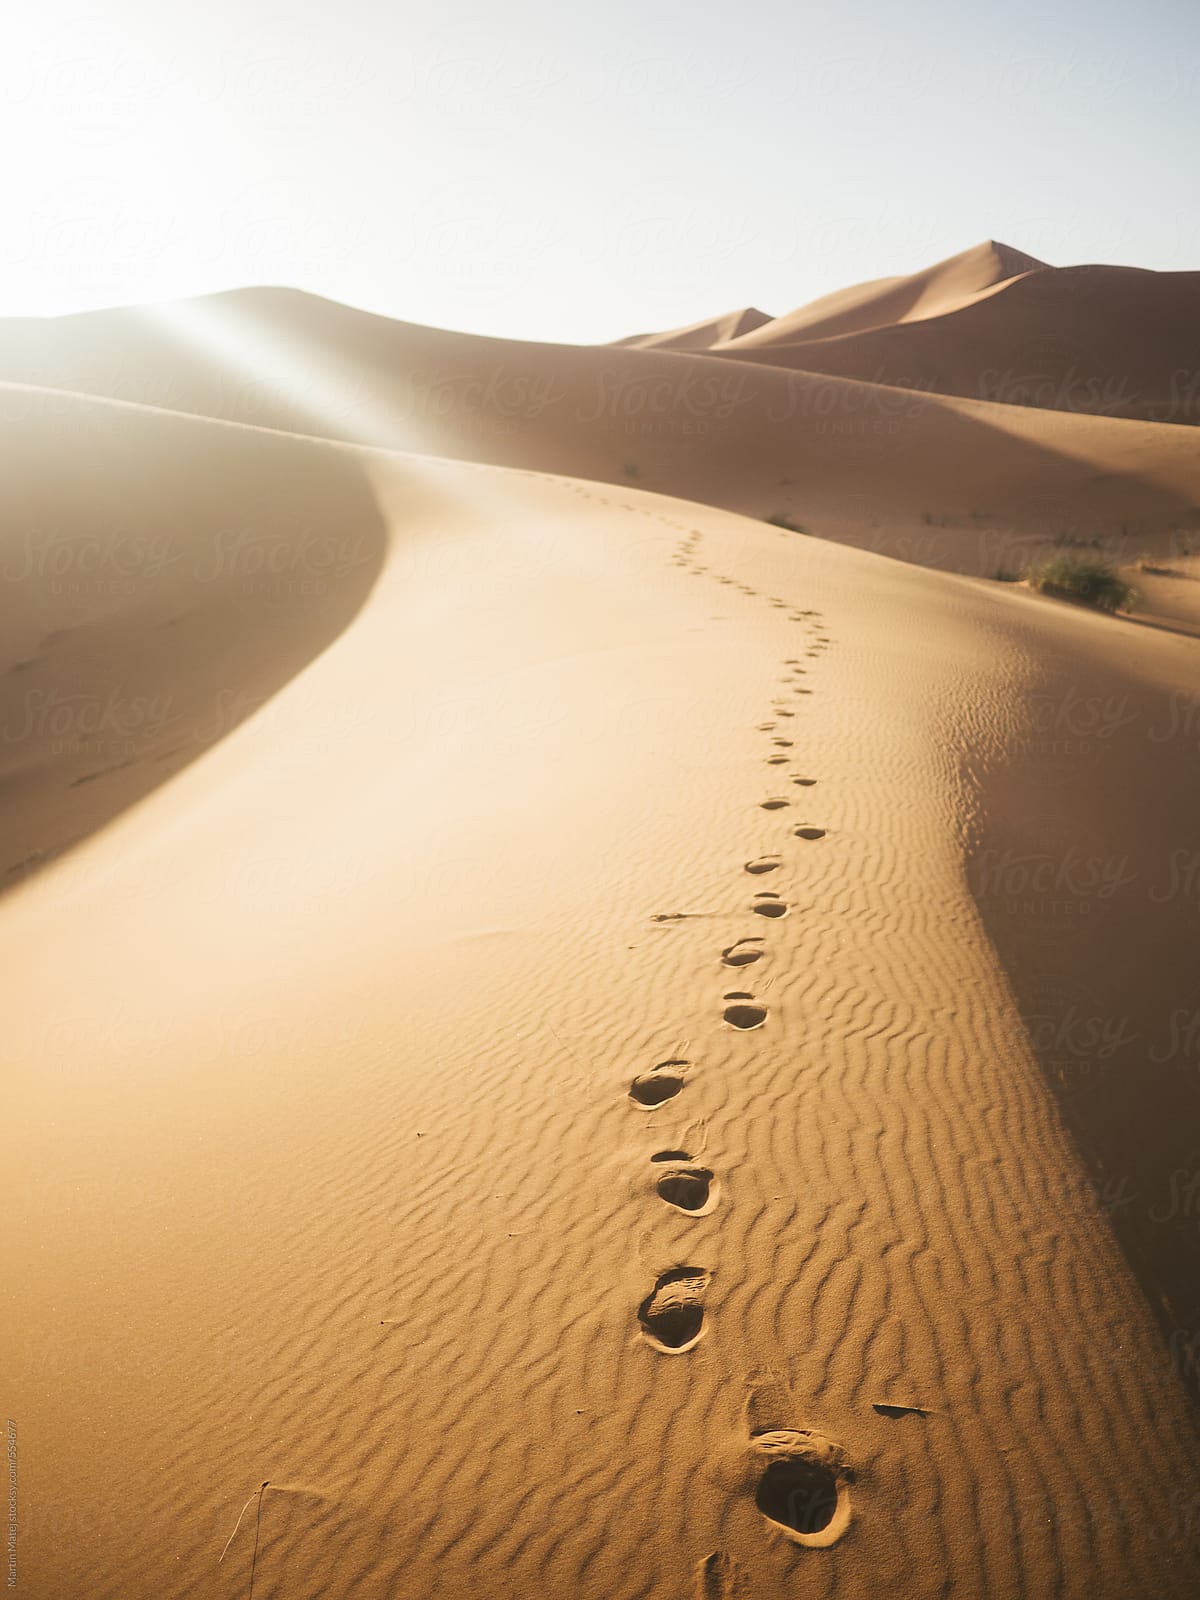 Shoe step marks in desert dunes